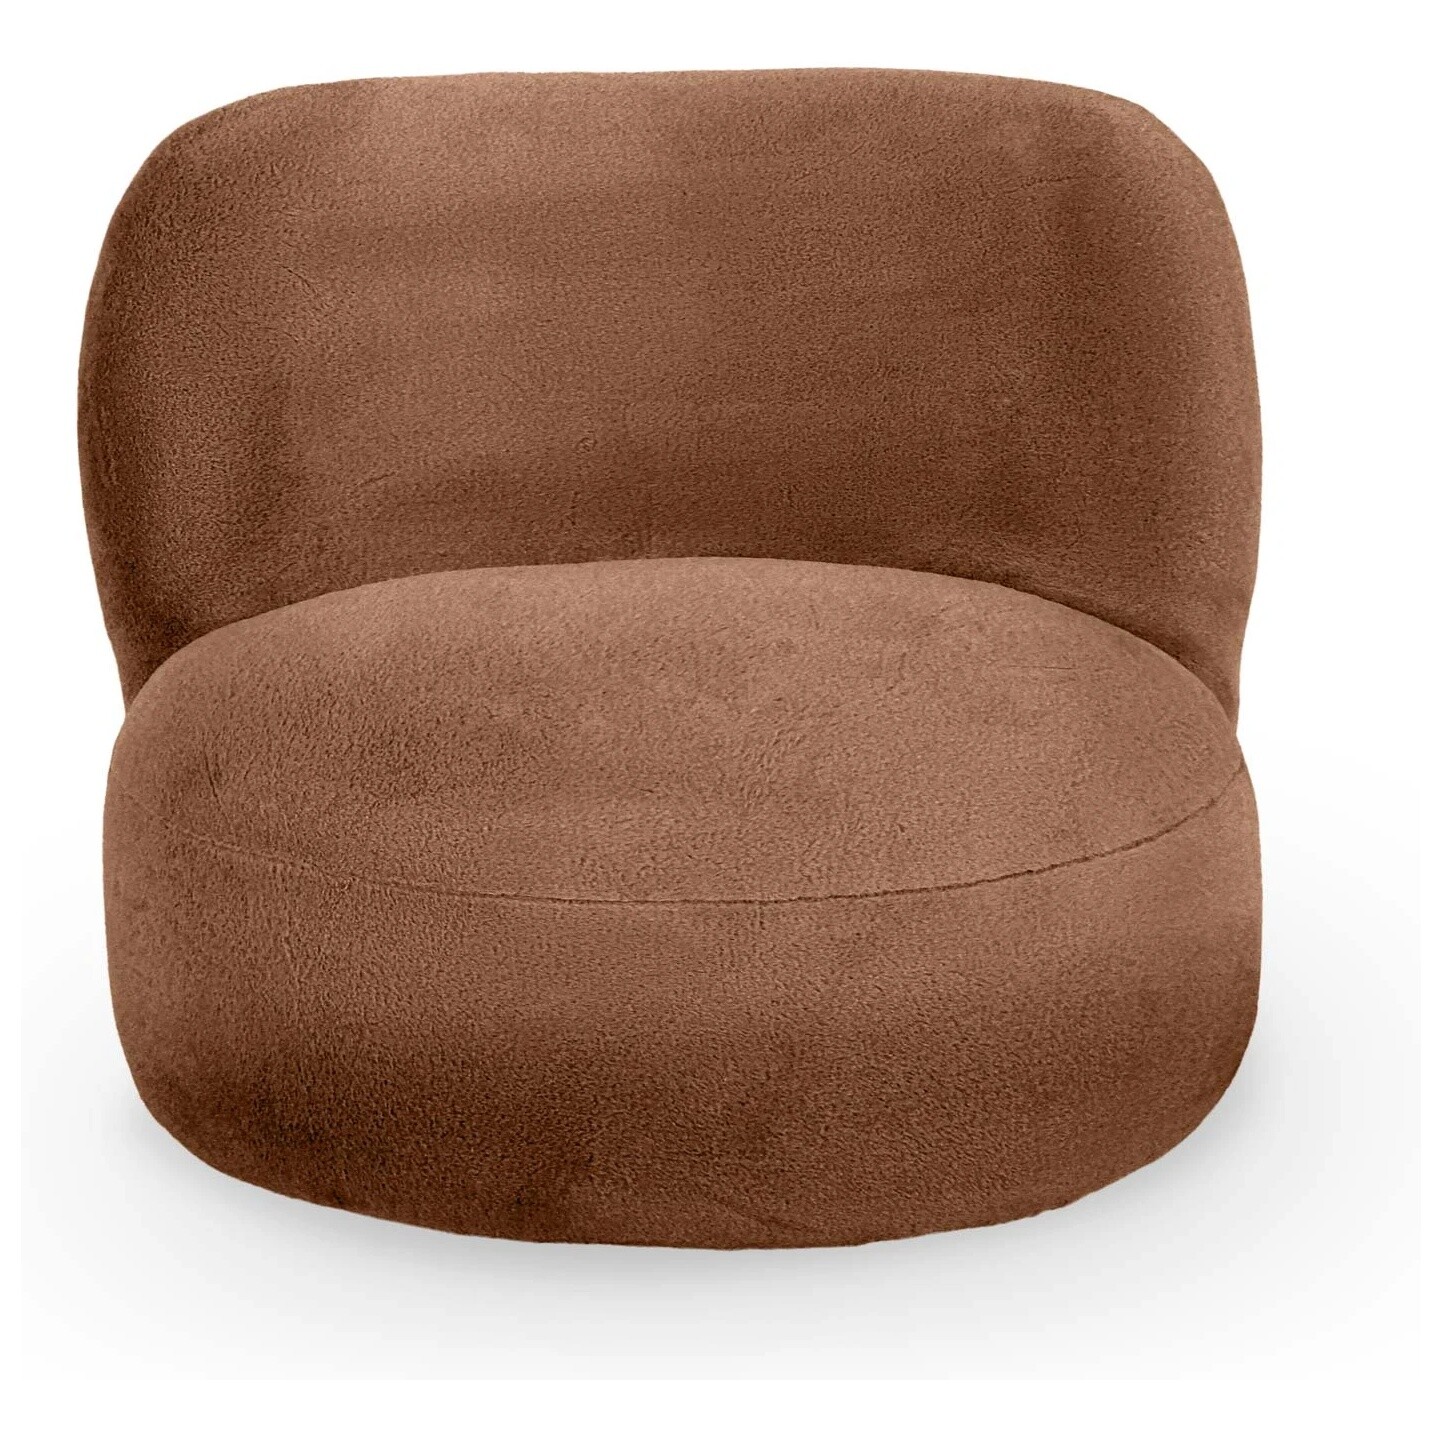 Кресло мягкое круглое без ножек искусственный мех коричневое Patti 41-1